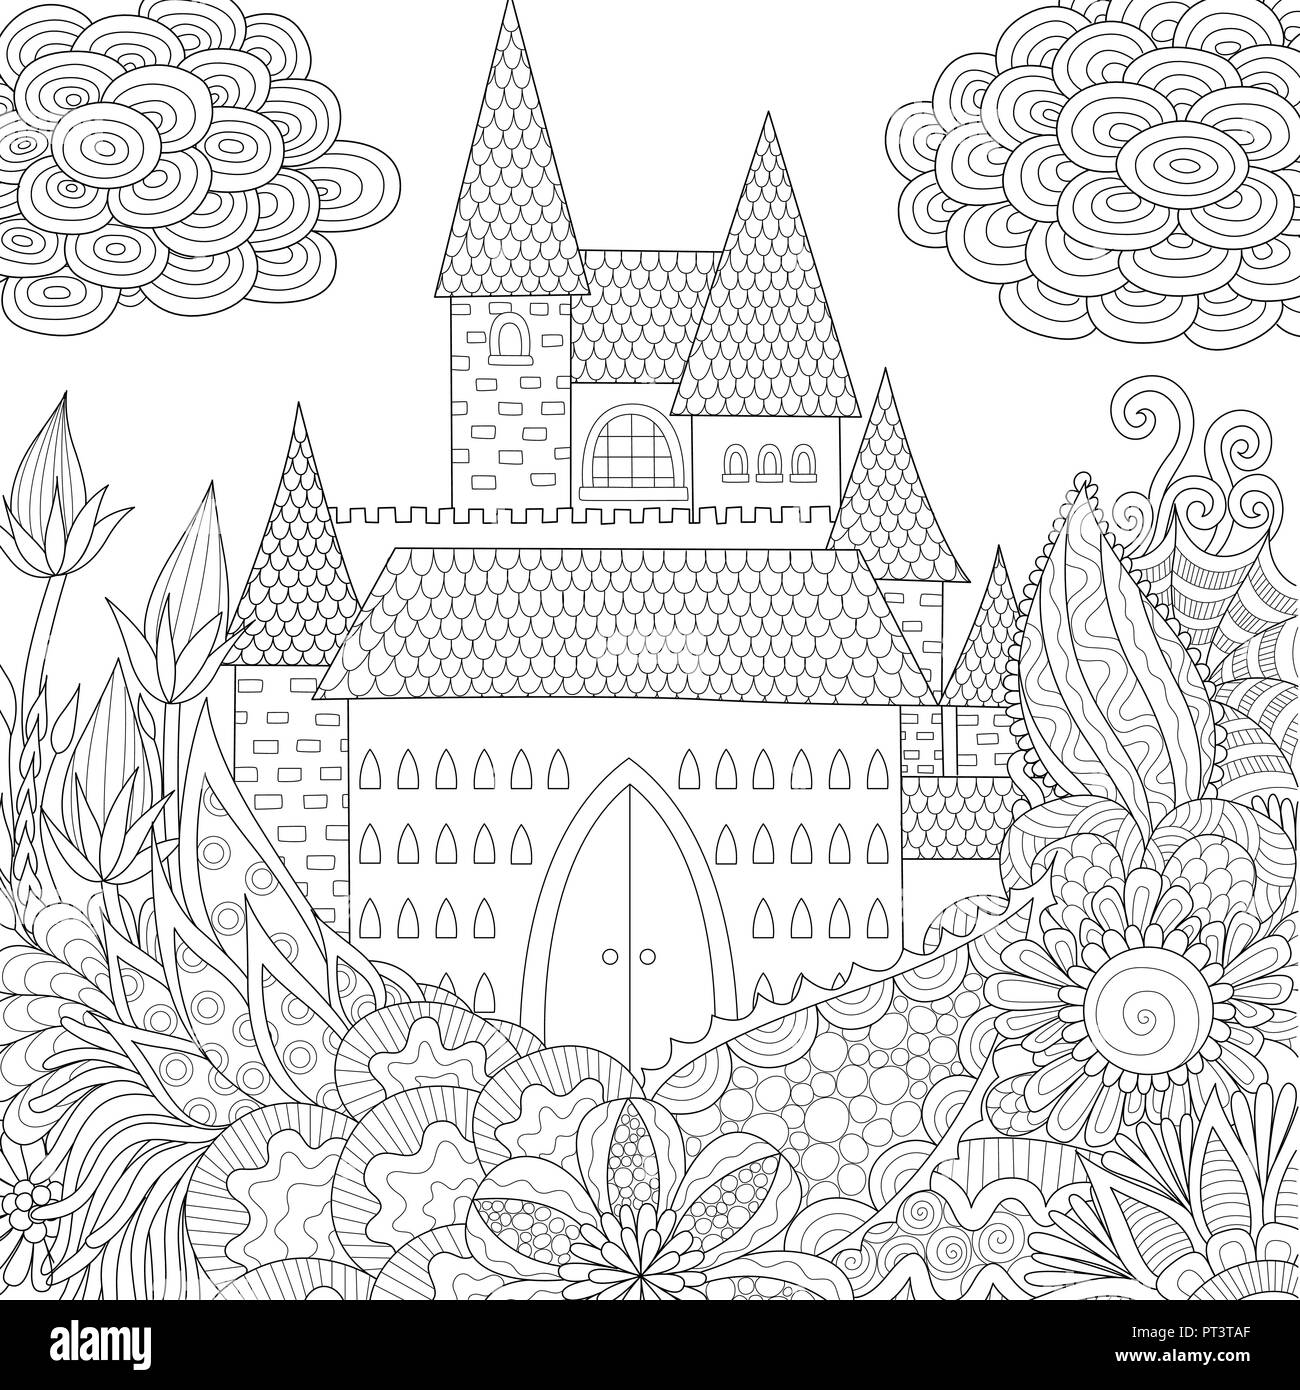 Line art design von Dschungel und Schloss Buch Färbung für Erwachsene. Vector Illustration. Antistress freihand Zeichnung mit Doodle und zentangle eleme Stock Vektor